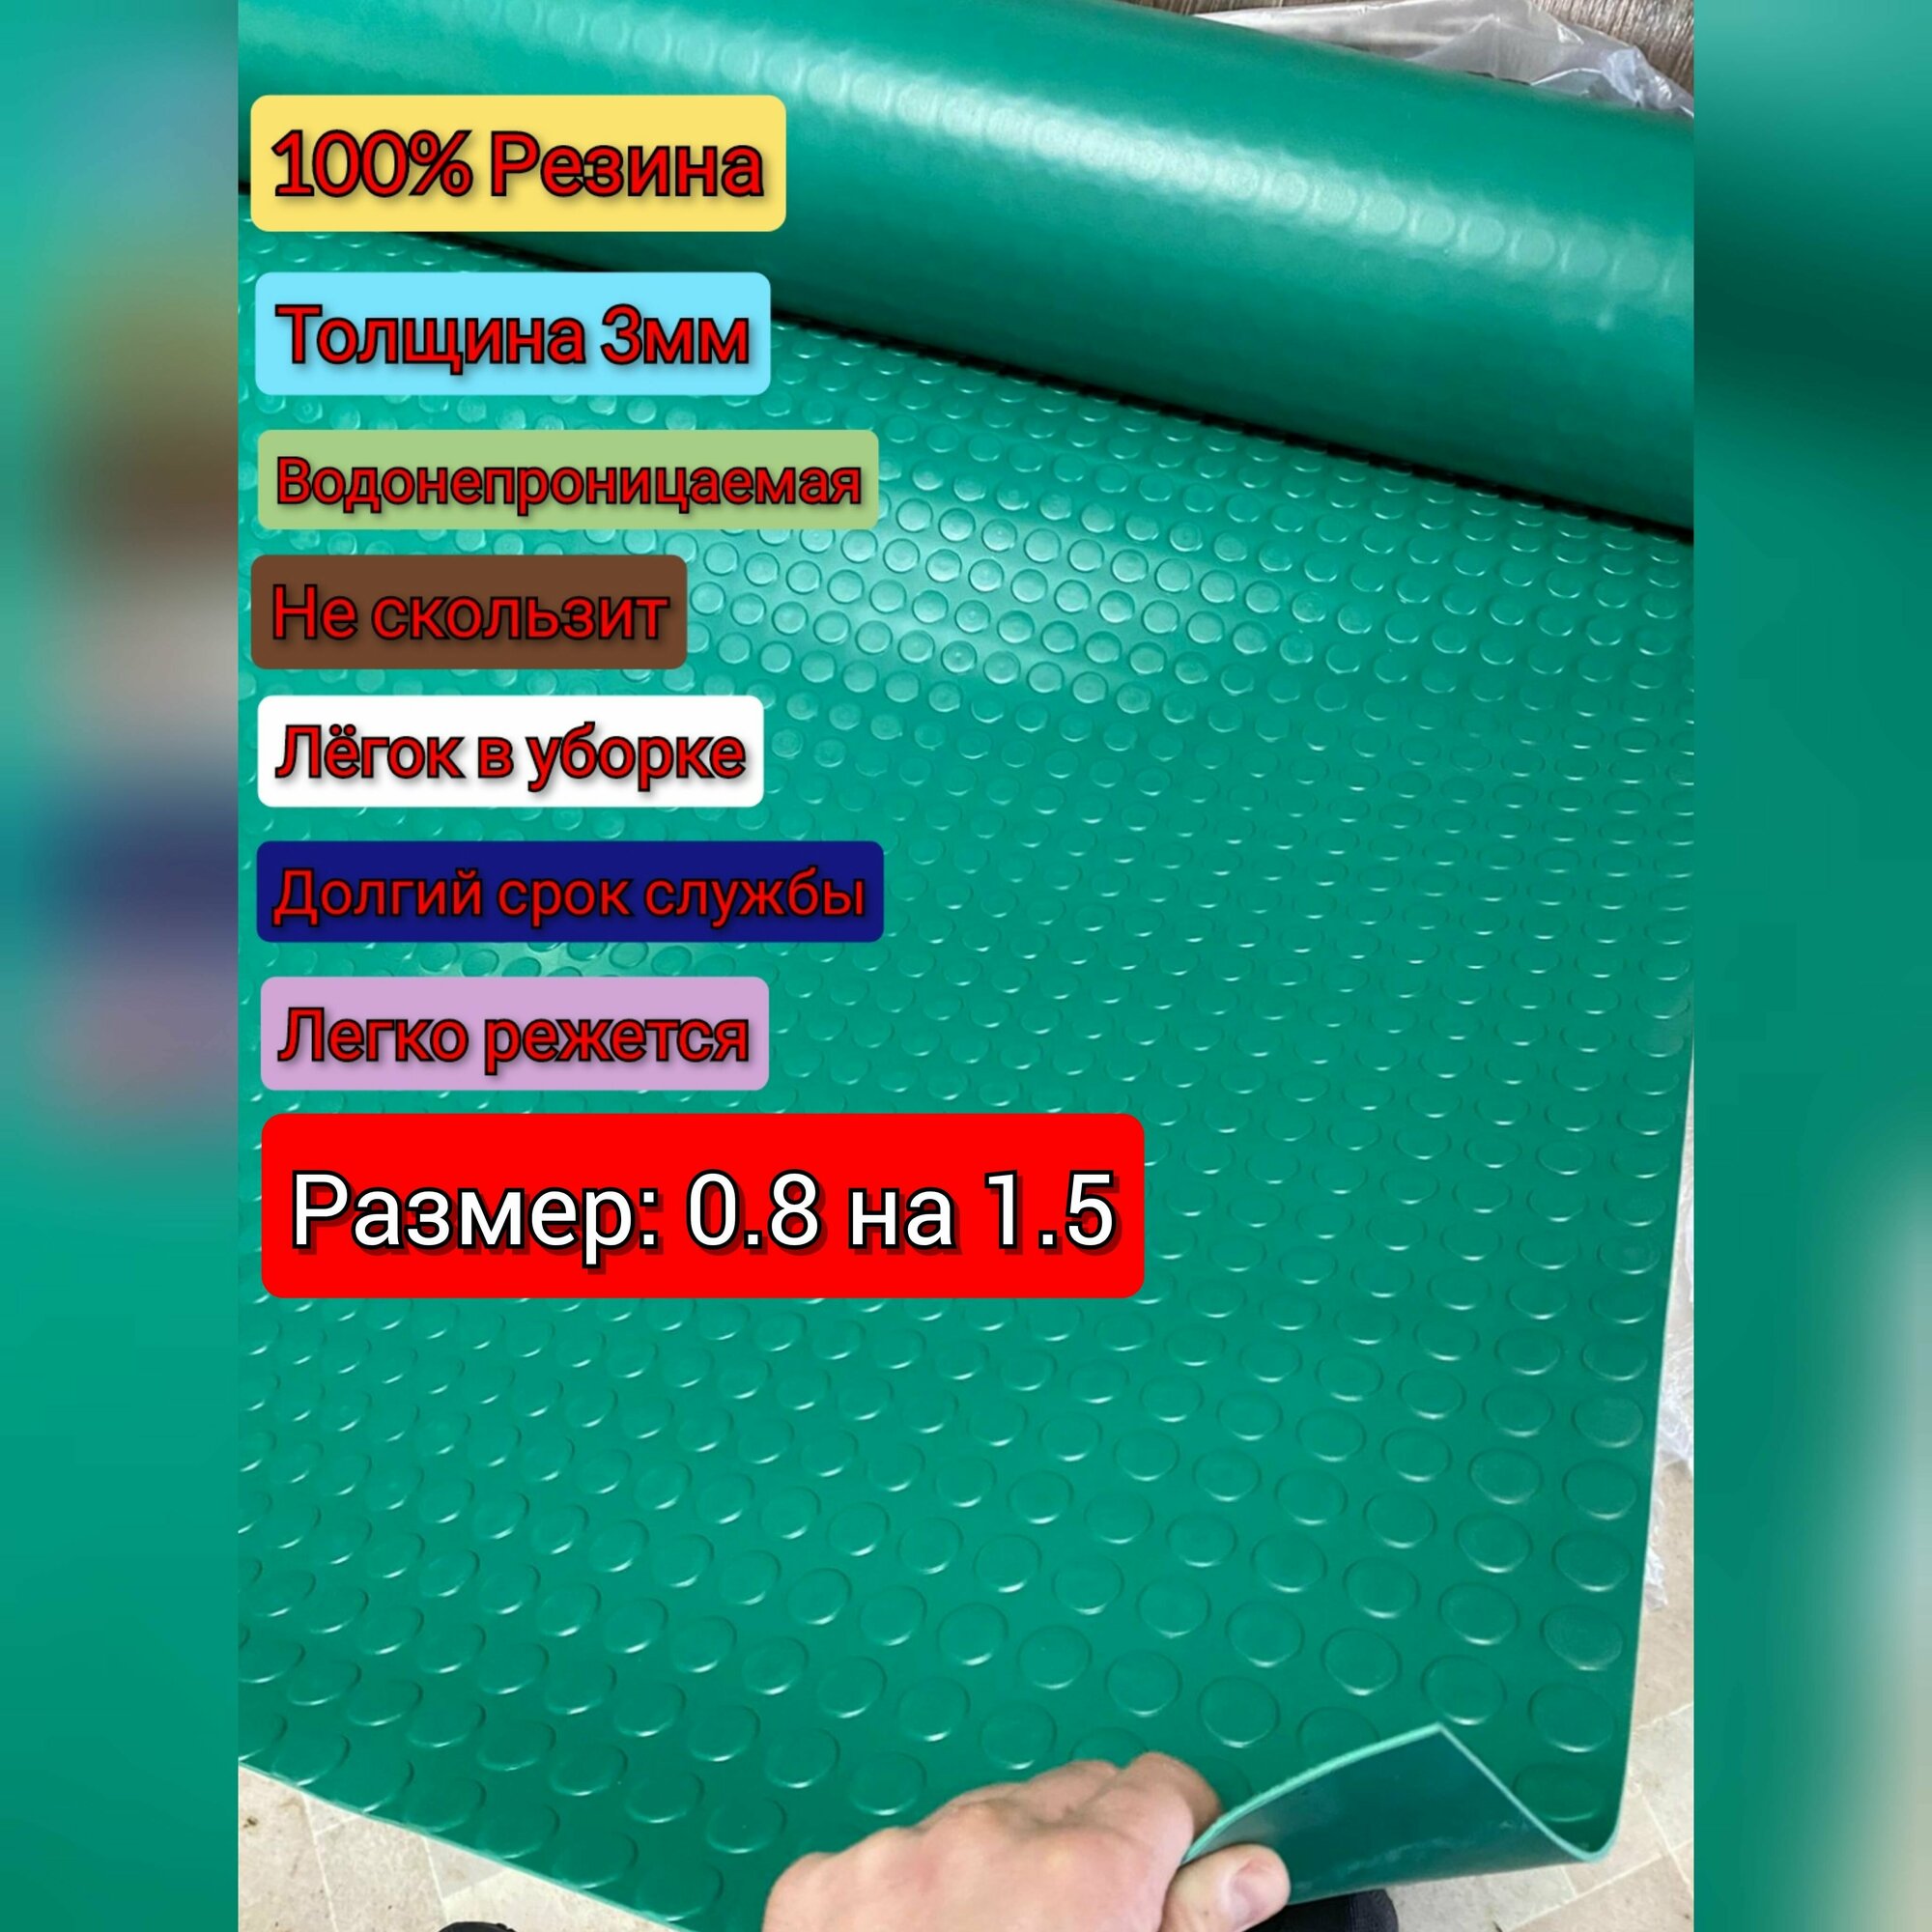 Резиновое покрытие напольное в рулоне 0.8 х 1.5 (Монета, цвет зелёный) Резиновая дорожка для авто, гаража, ступень, для лифта